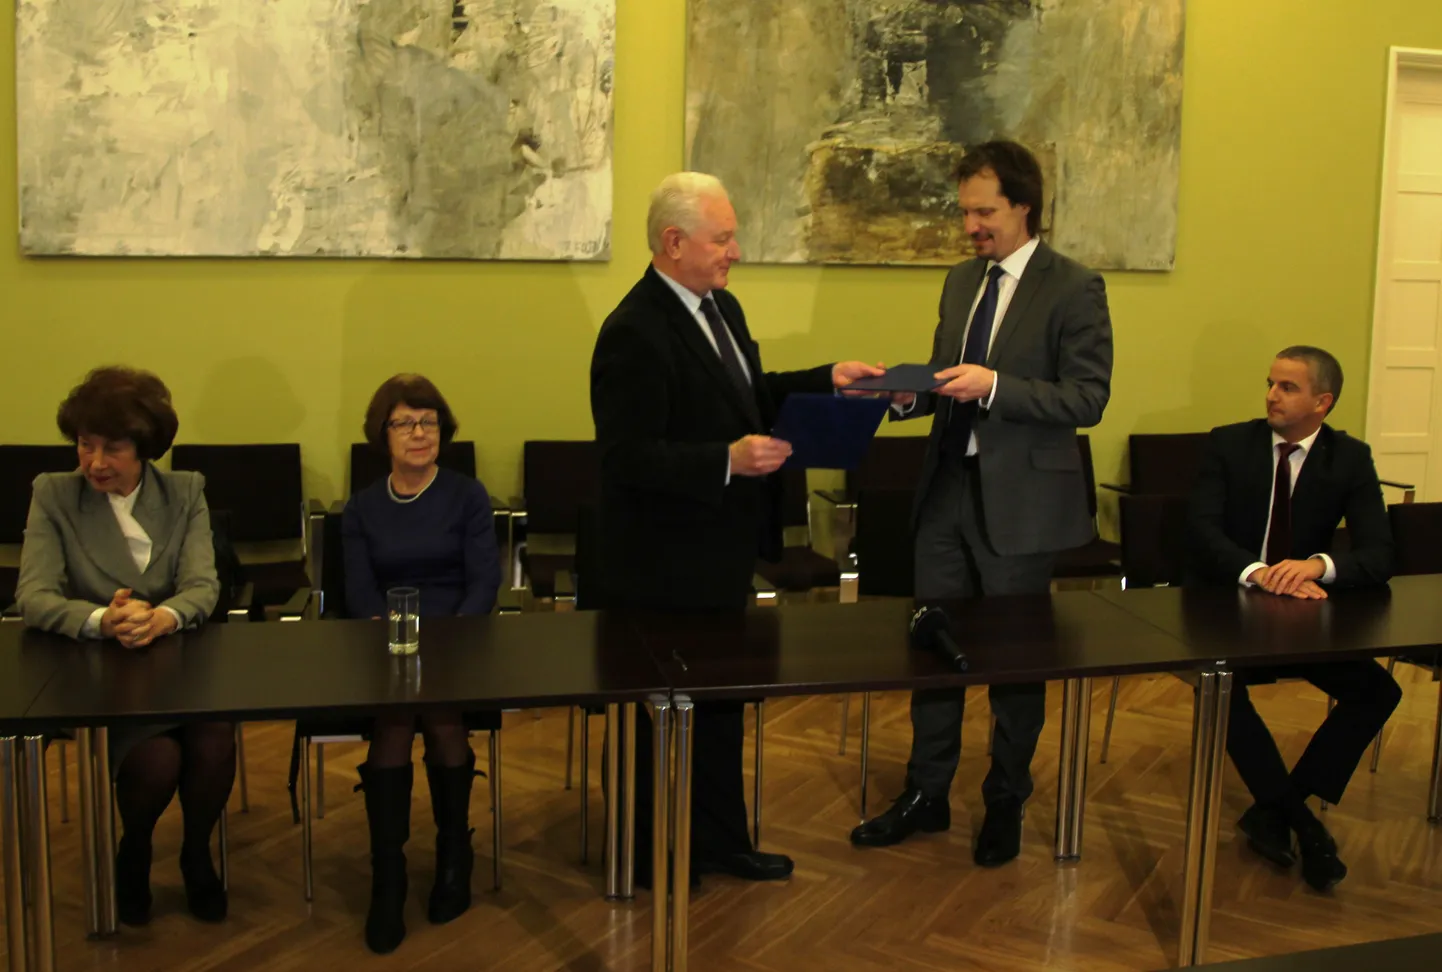 Kultuuriminister Indrek Saar ja teenistujate ametiliitude keskorganisatsiooni TALO juhatuse esimees Ago Tuuling allkirjastasid ühiste kavatsuste kokkuleppe.